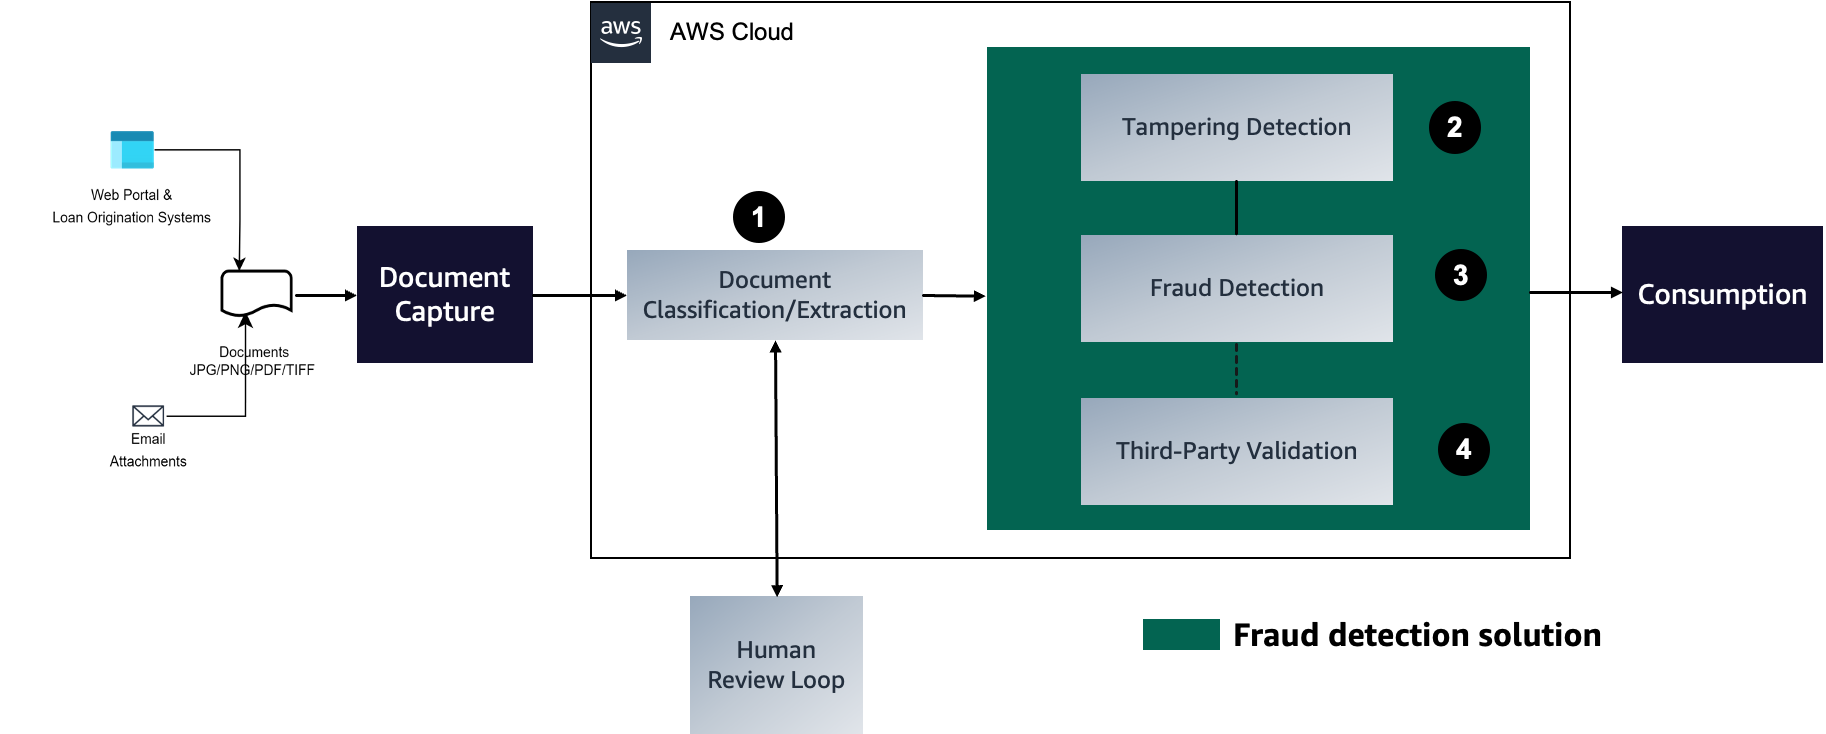 A jelzáloghitel-okmány-csalás észlelésének automatizálása ML-modellel és üzletileg meghatározott szabályokkal az Amazon csaláskeresővel: 3. rész | Amazon webszolgáltatások